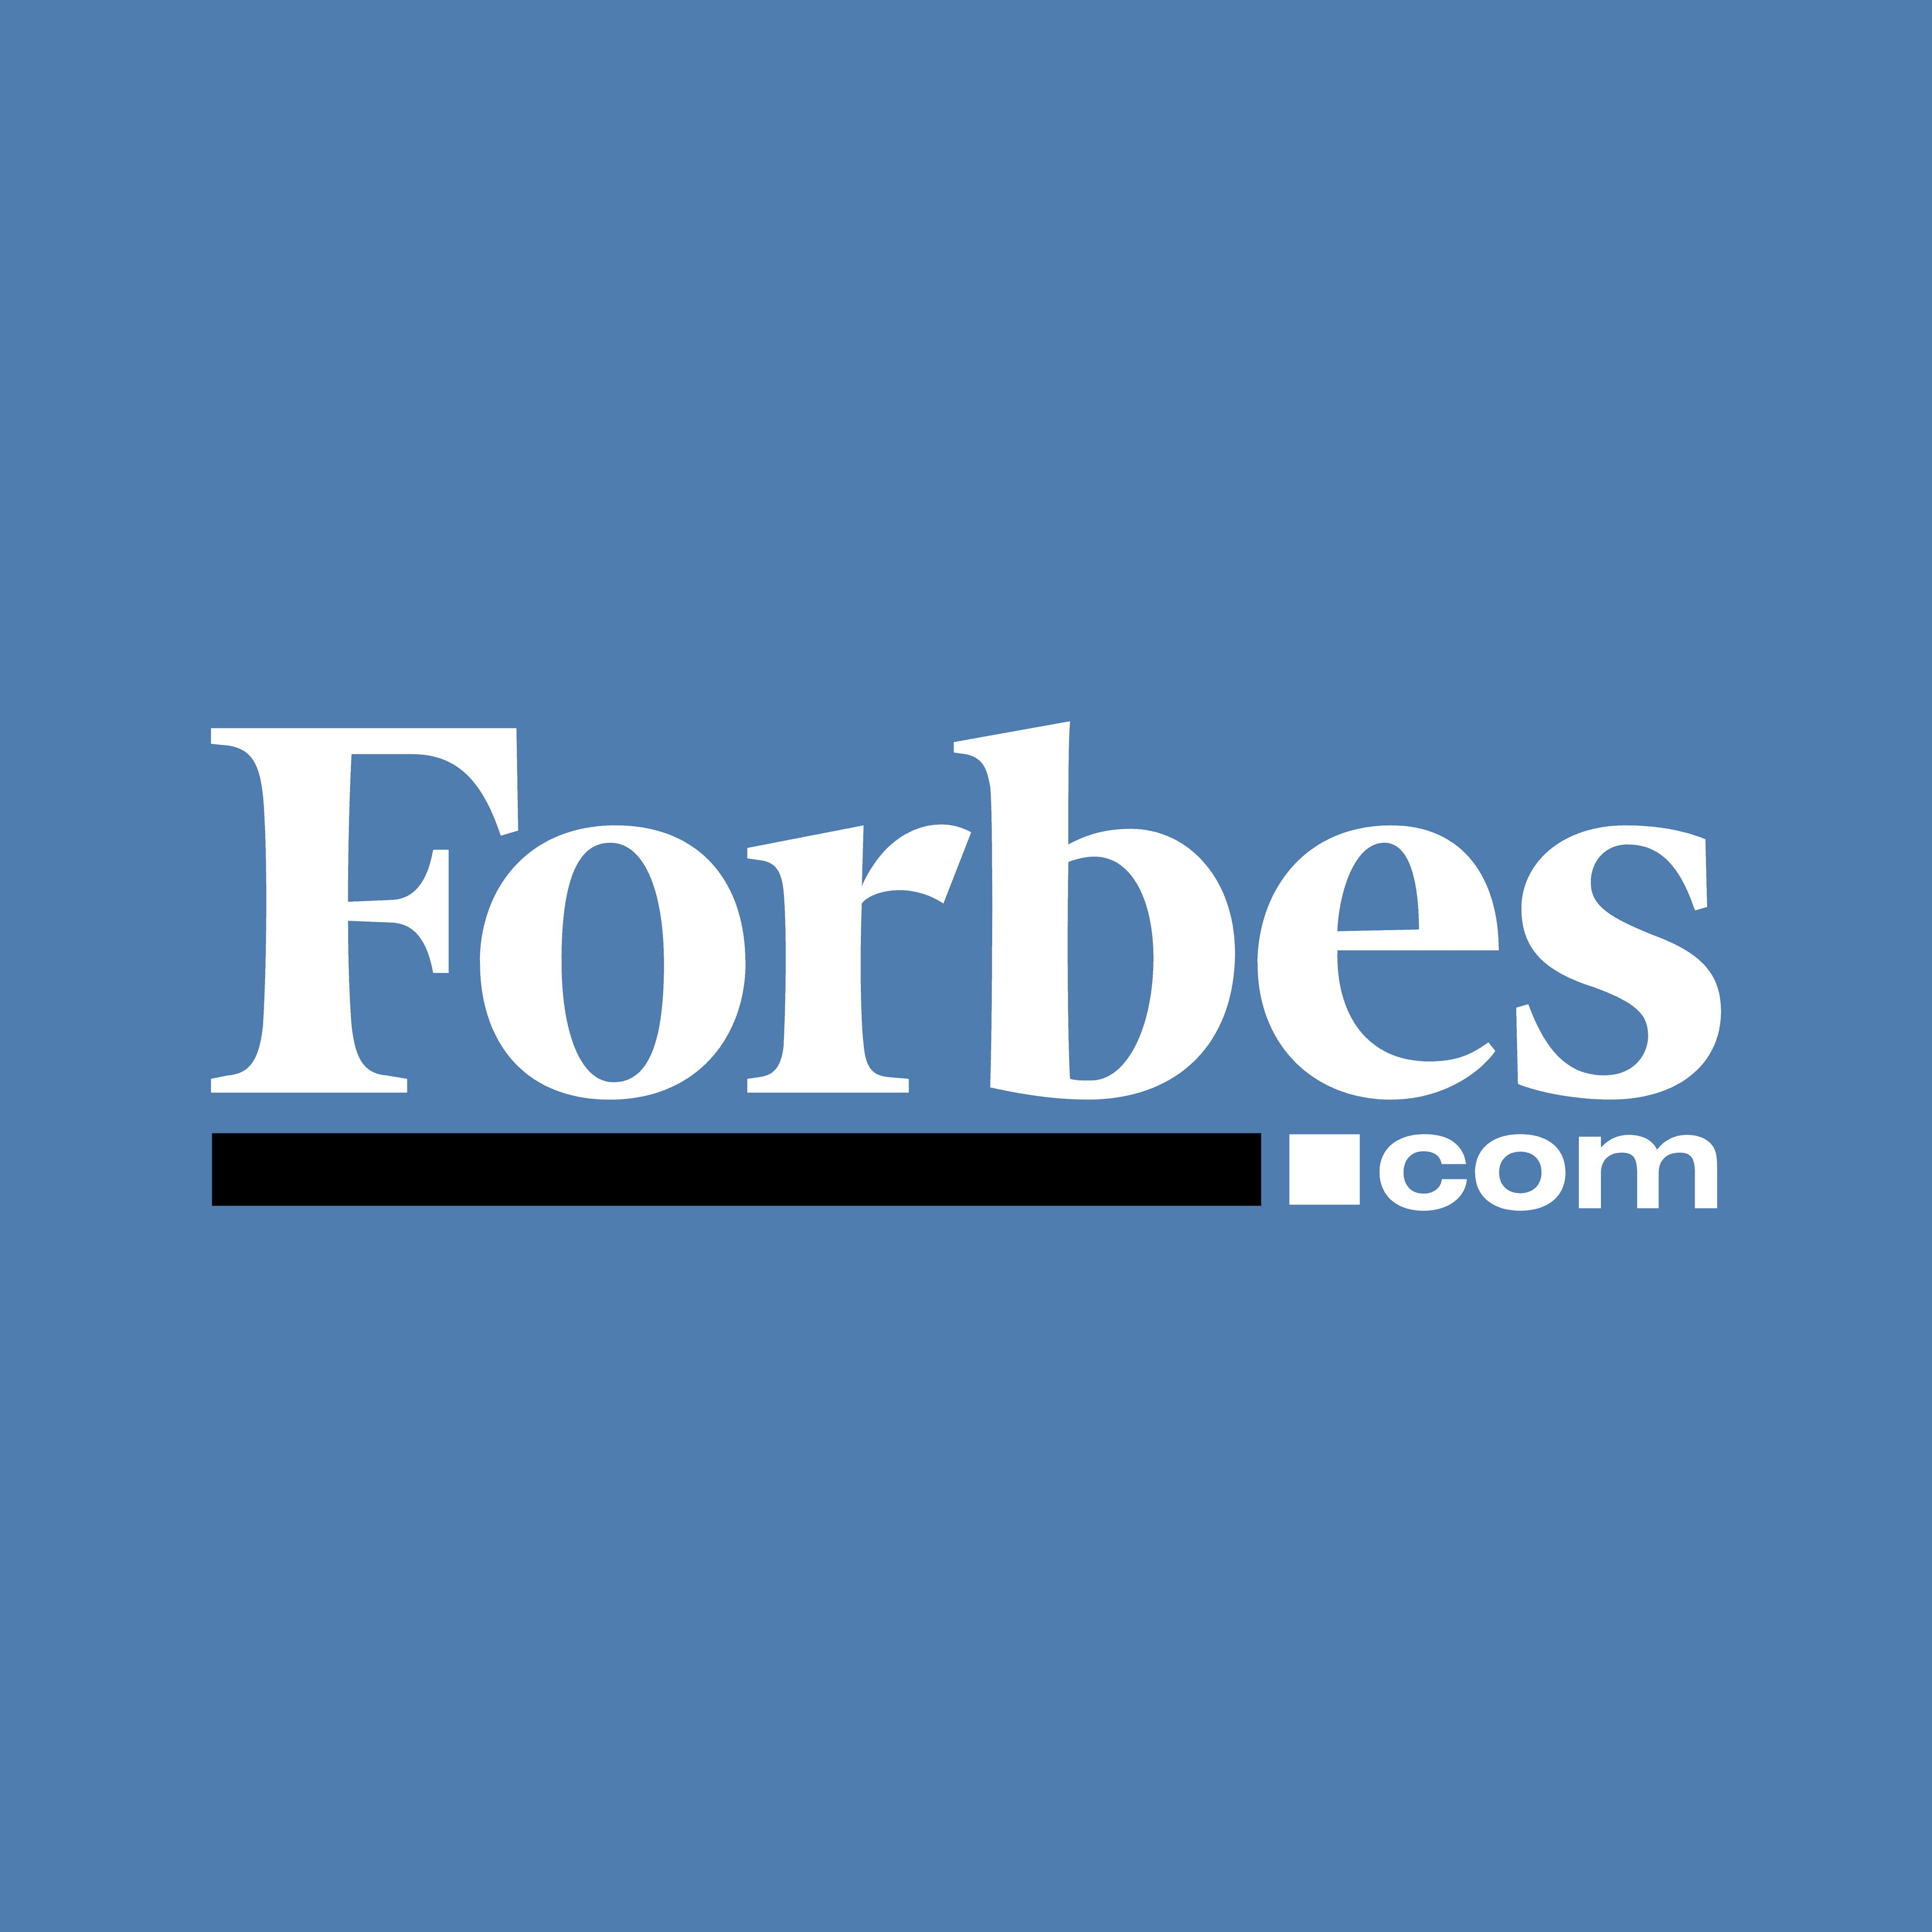 Forbes_logo_com.png